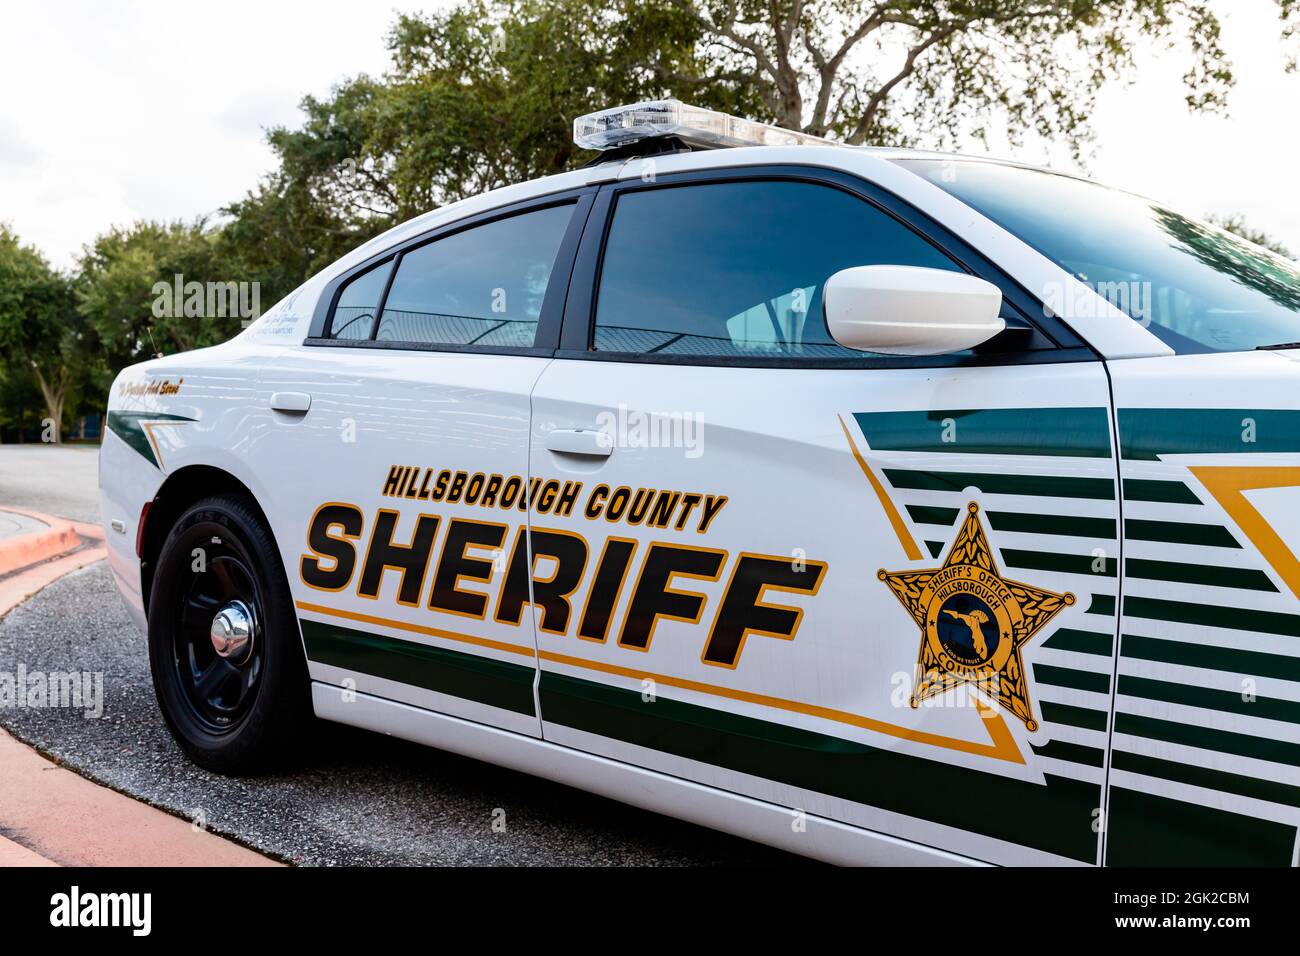 Tampa, FL - 10 de septiembre de 2021: Vehículo de patrulla del Sheriff del Condado de Hillsborough en Tampa, Florida Foto de stock